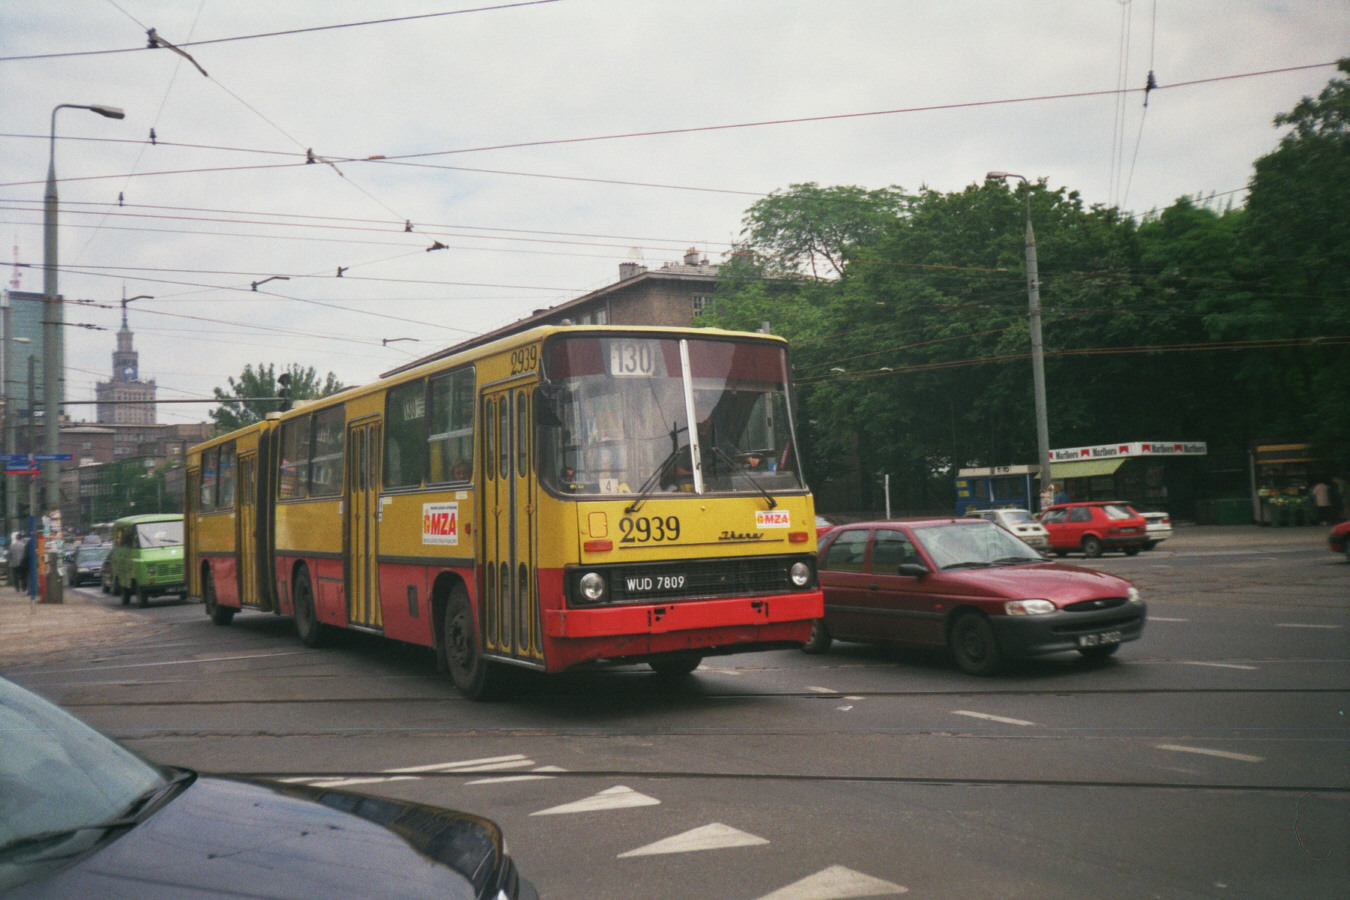 2939
Ikarus 280, produkcja 1989 (ex. 2662), kasacja 2002.
Przeniesiony po NG zajezdni Kleszczowa na Chełmską wóz 2939 podczas obsługi 130, która w historii miała swoje wzloty i upadki.

Foto: P. B. Jezierski
